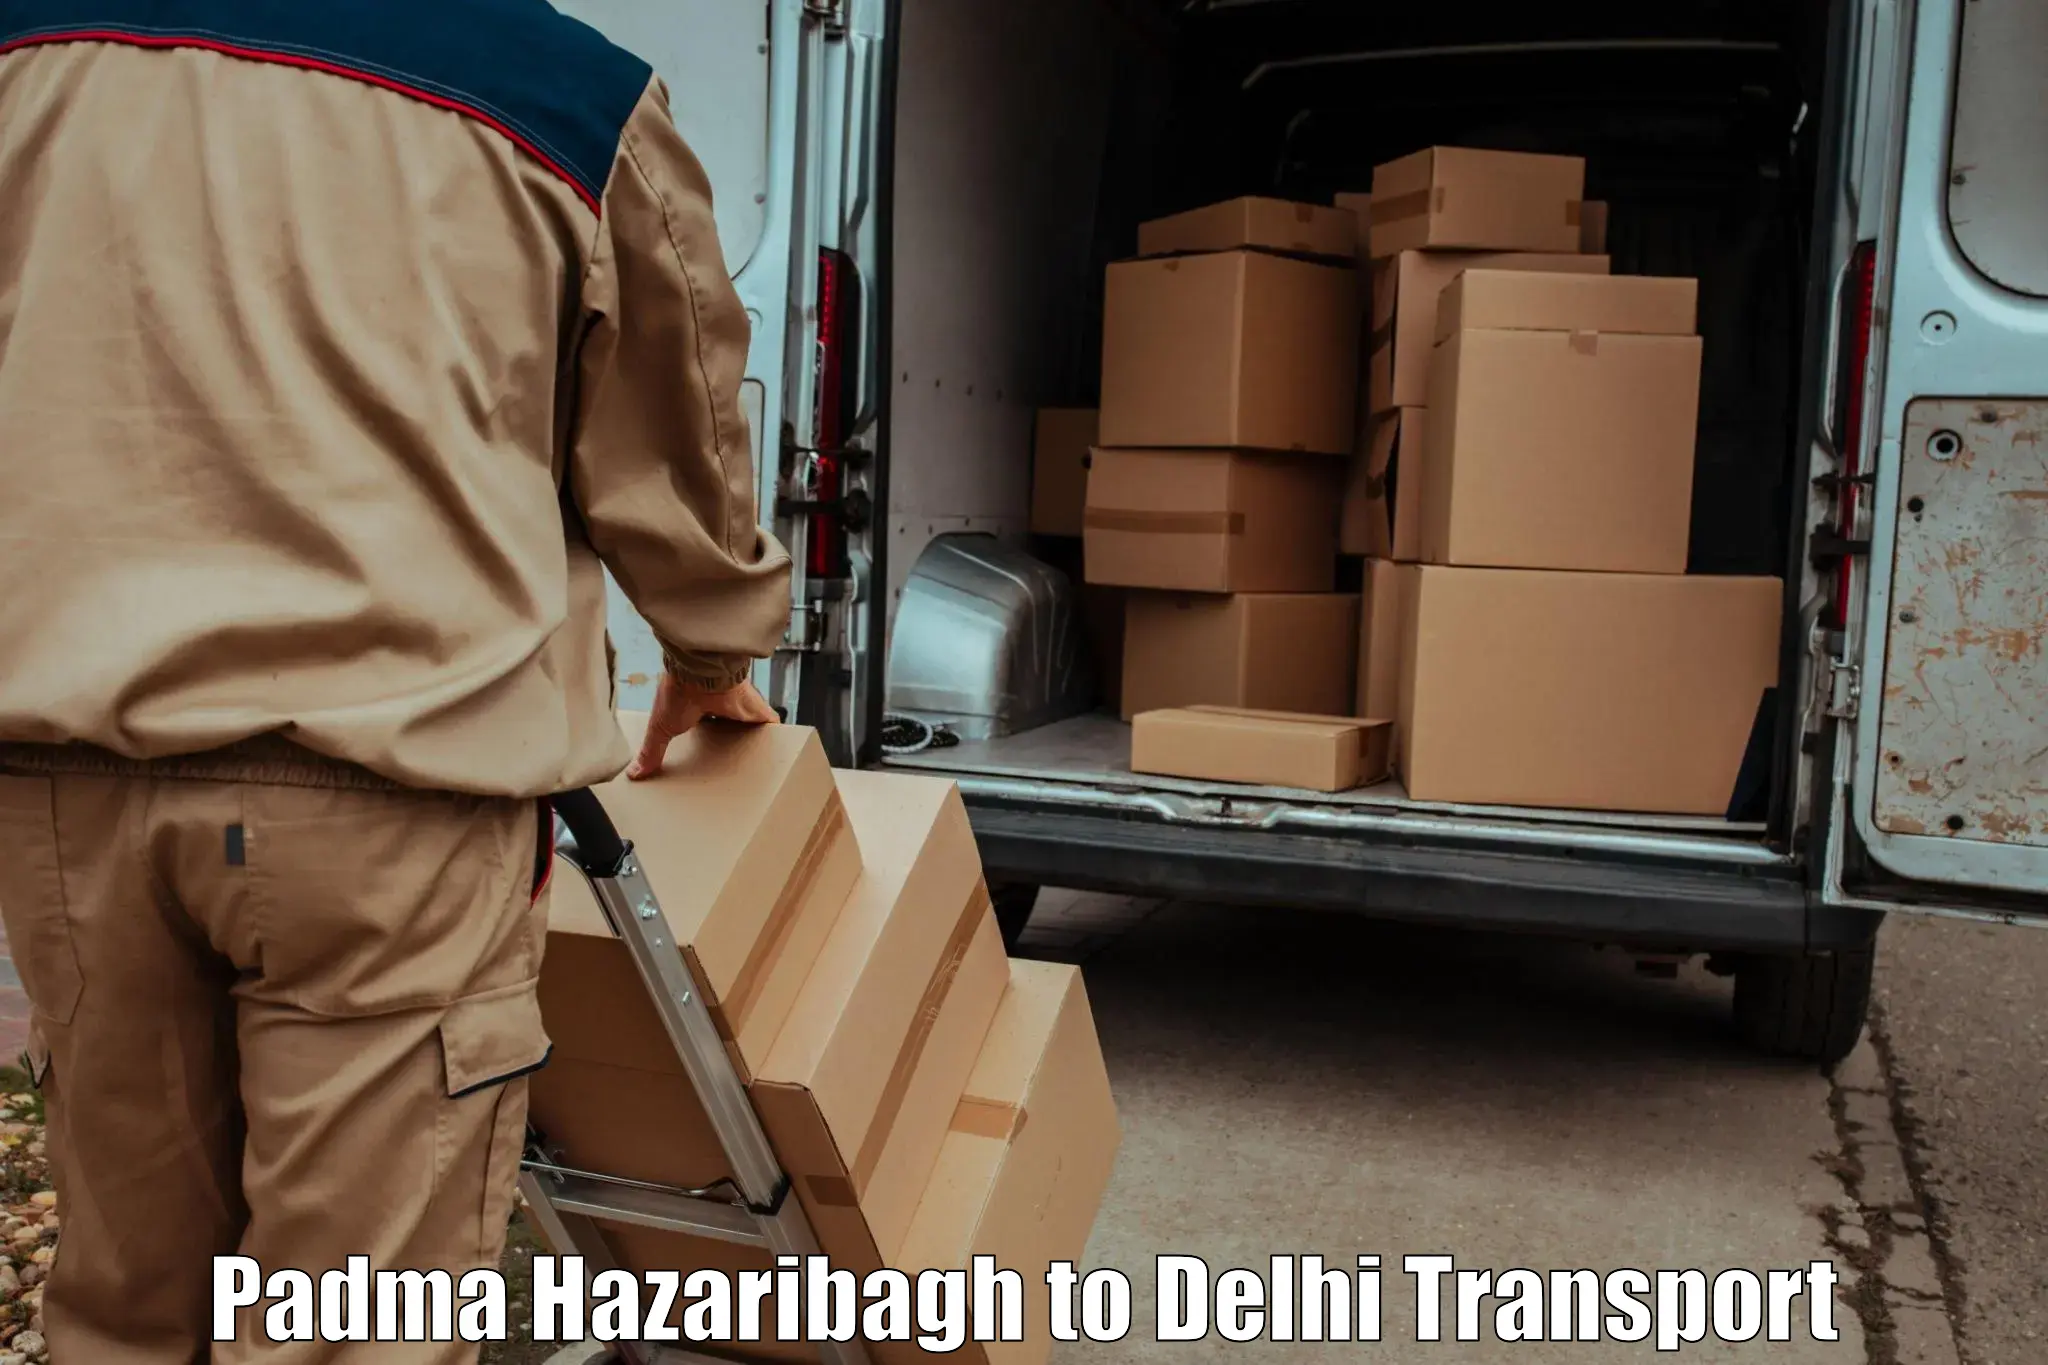 Road transport services Padma Hazaribagh to Burari